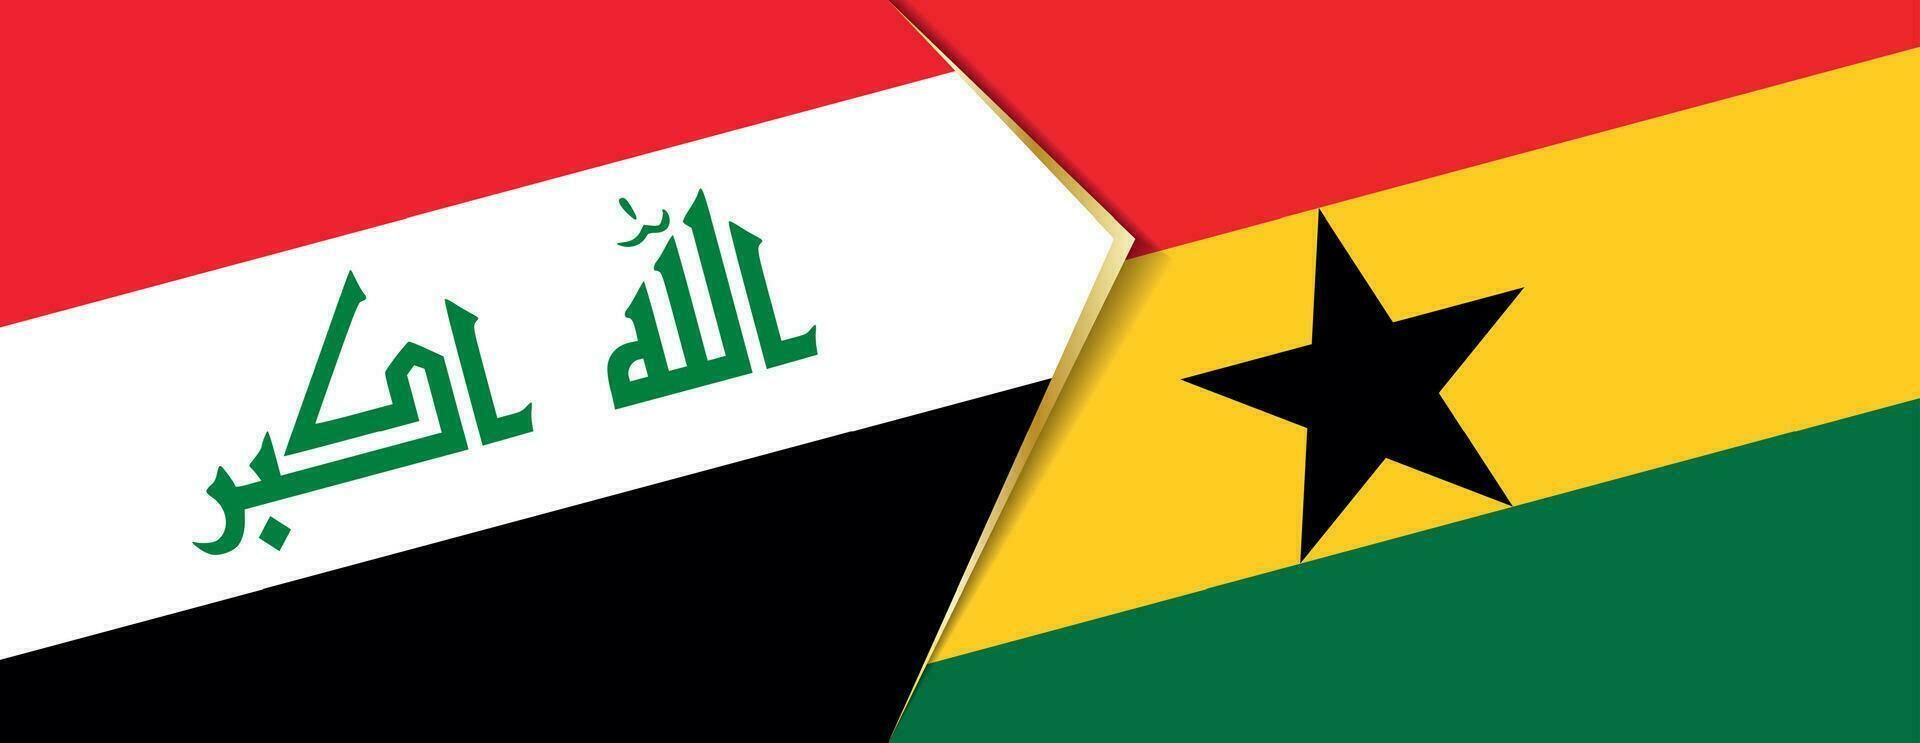 Iraque e Gana bandeiras, dois vetor bandeiras.